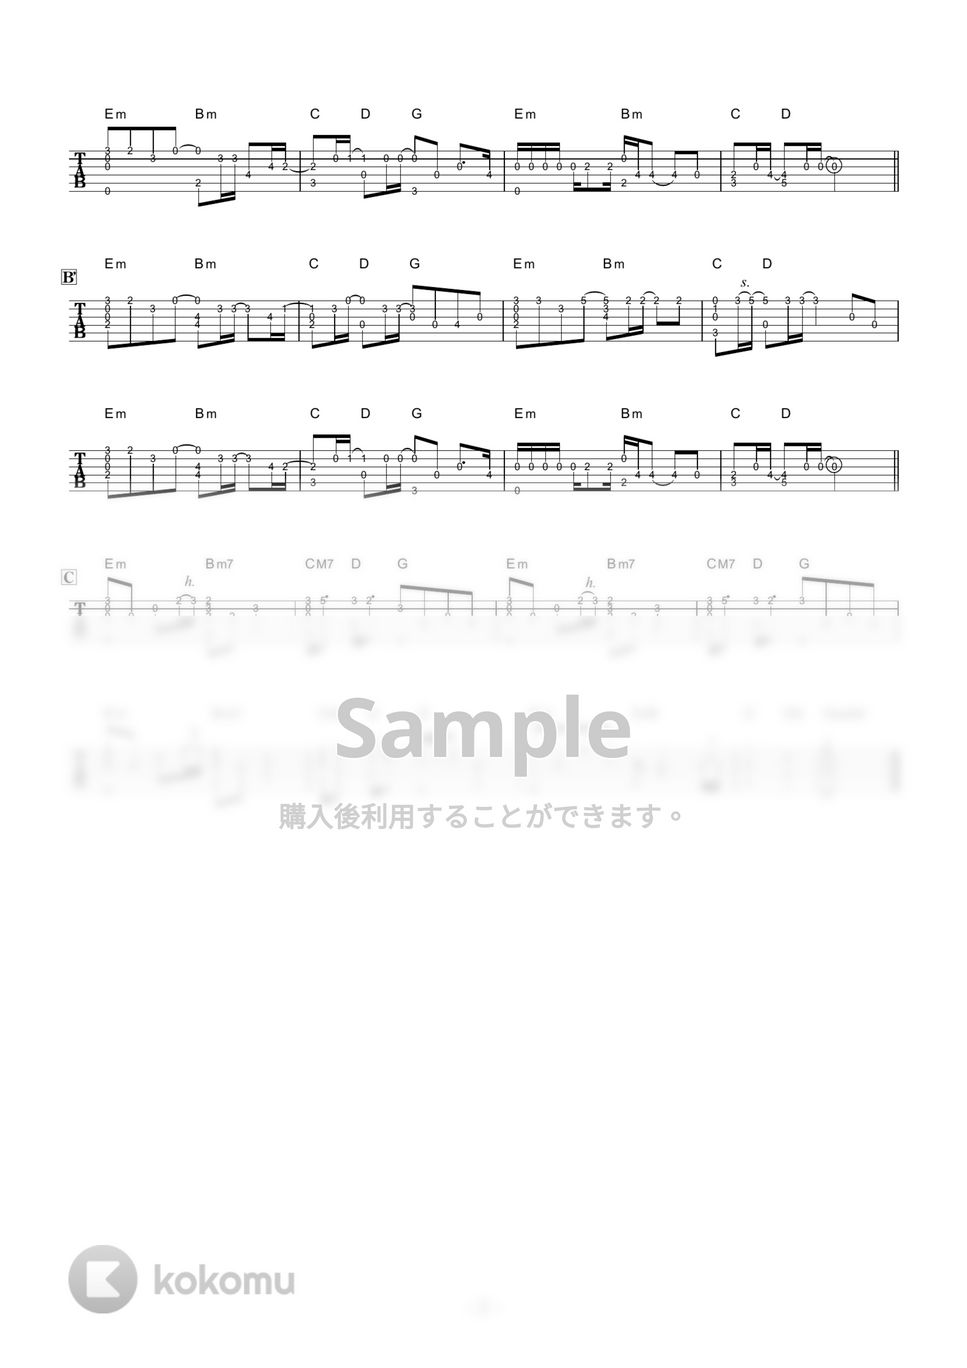 レミオロメン - ３月９日 (ソロギター) by 伴奏屋TAB譜